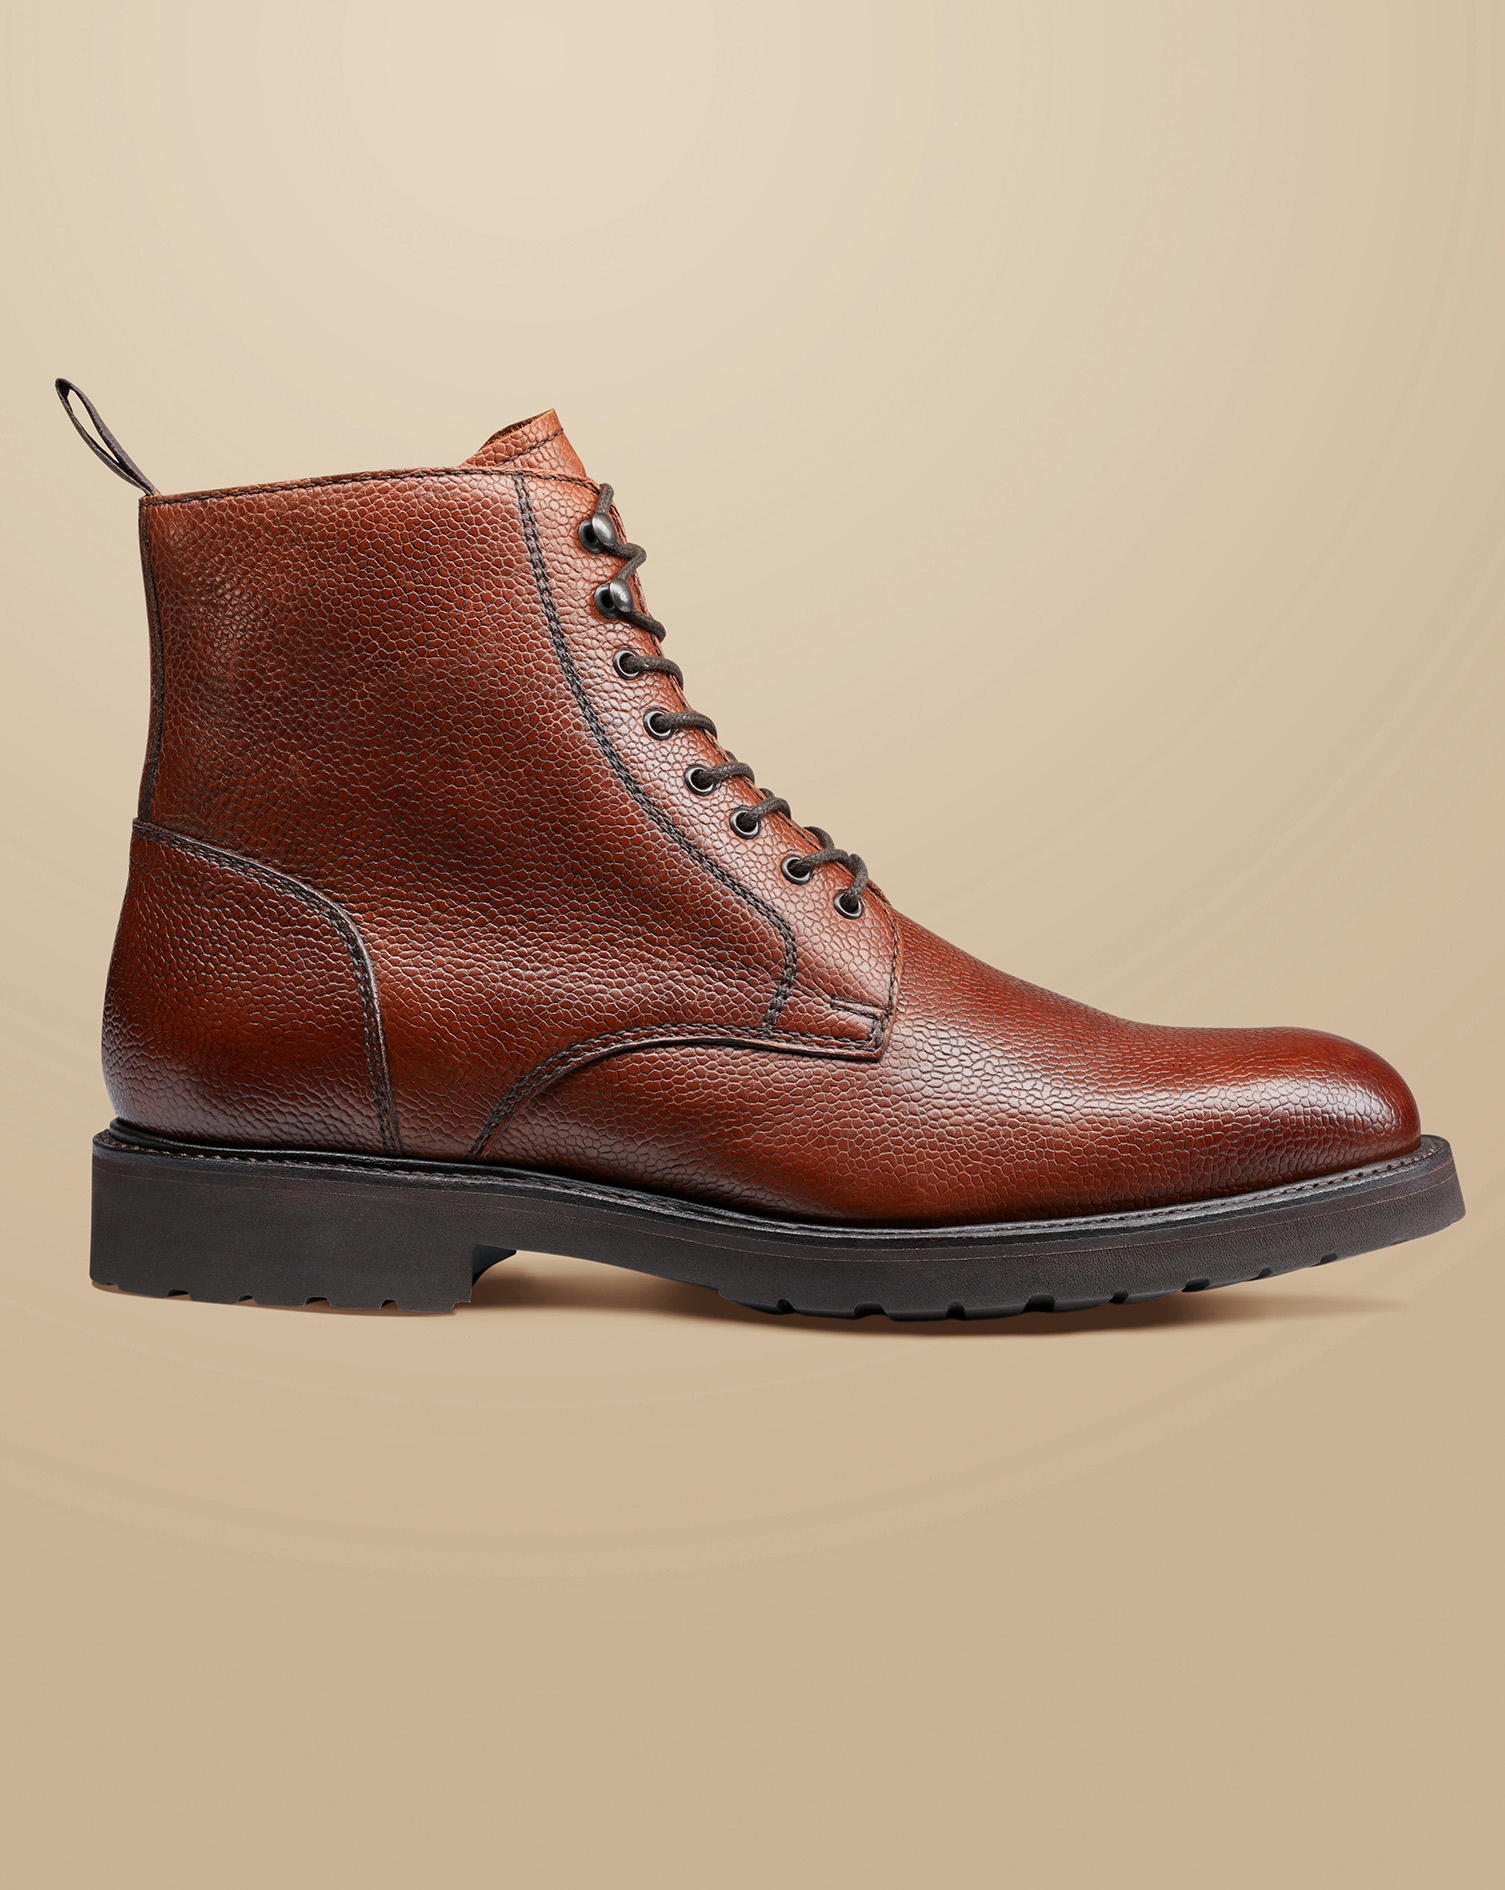 Men's Charles Tyrwhitt Grain Leather Boots - Chestnut Brown Size 11
